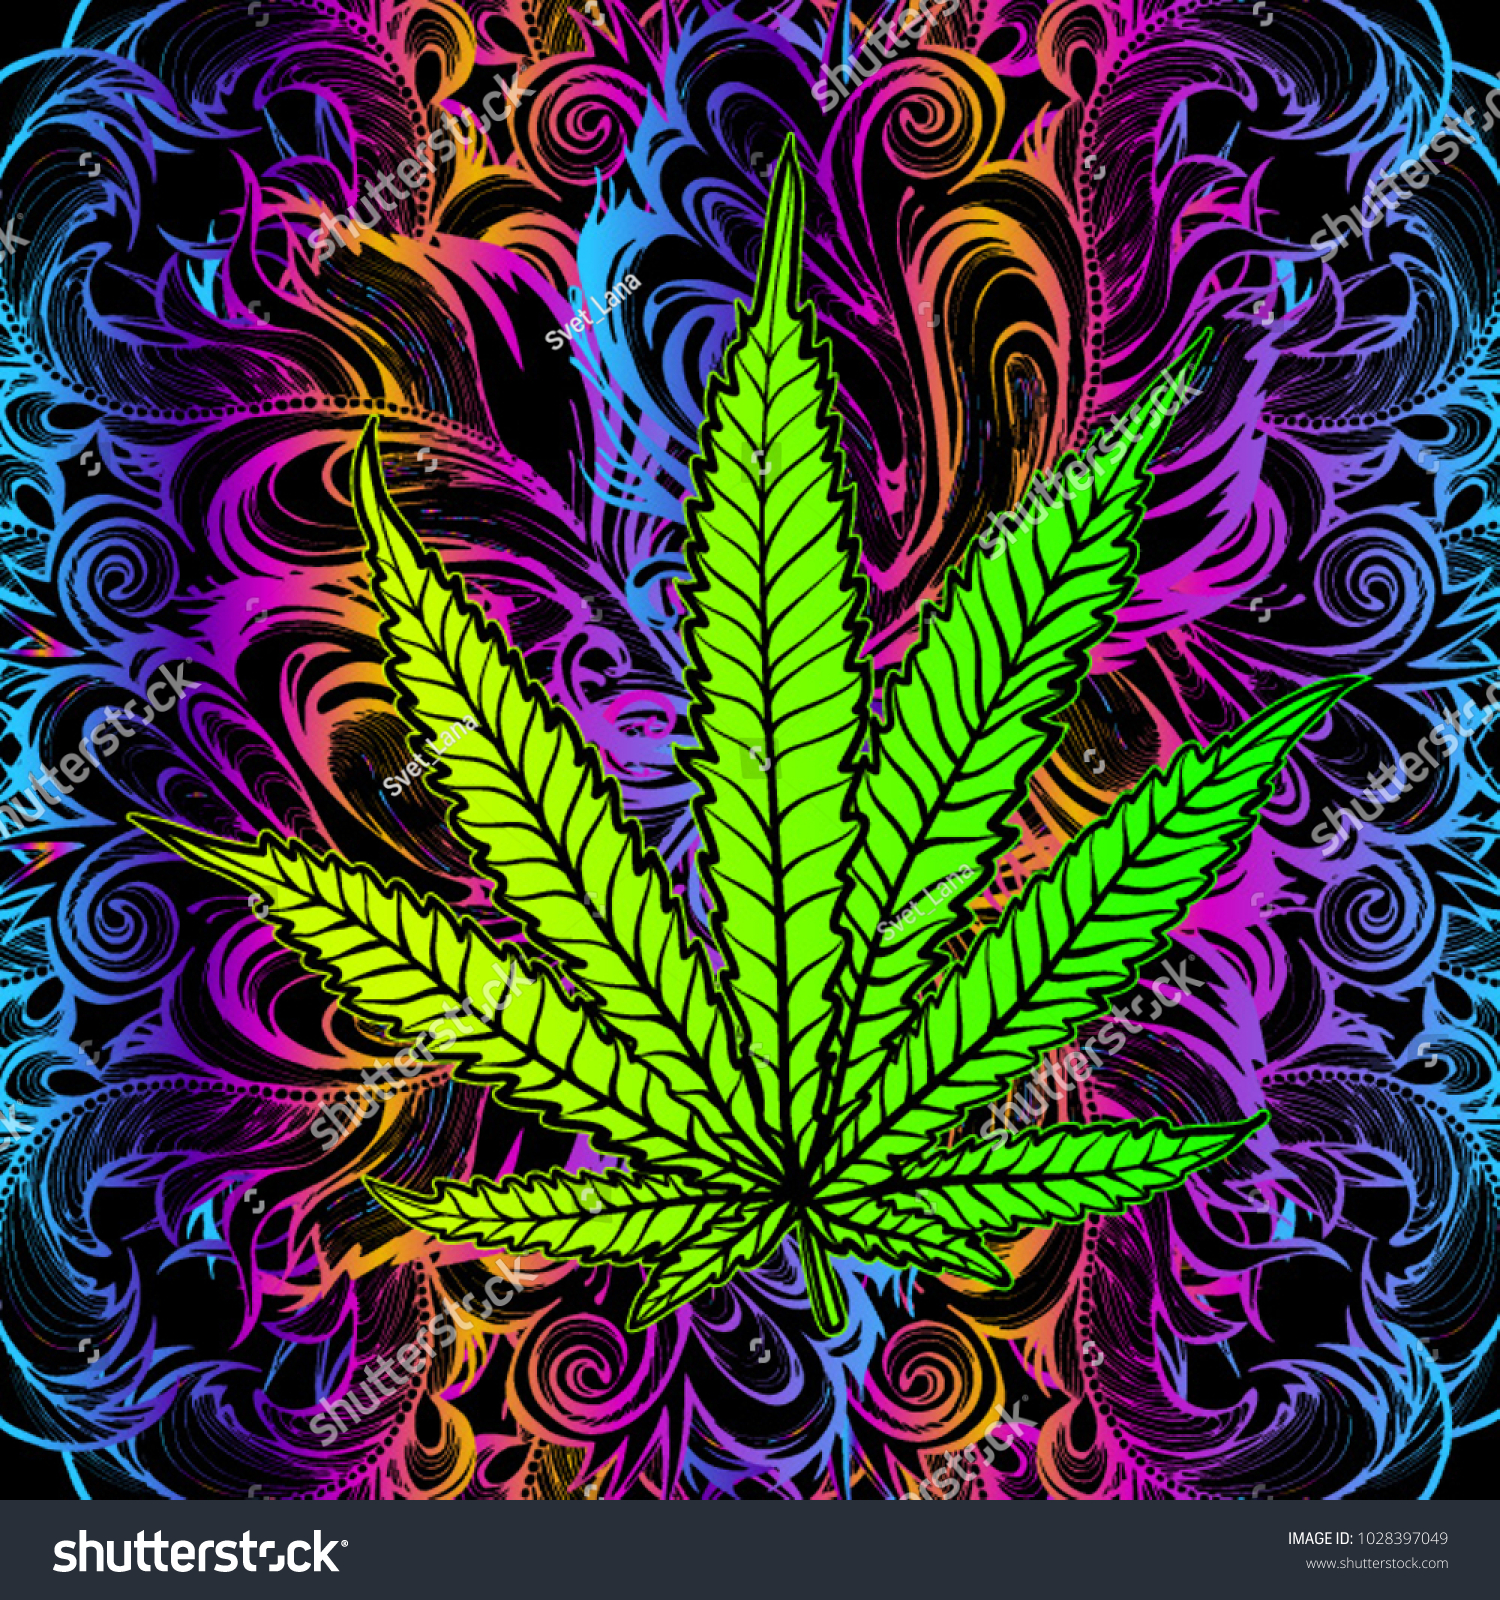 Конопля картинки арт марихуана часть 2